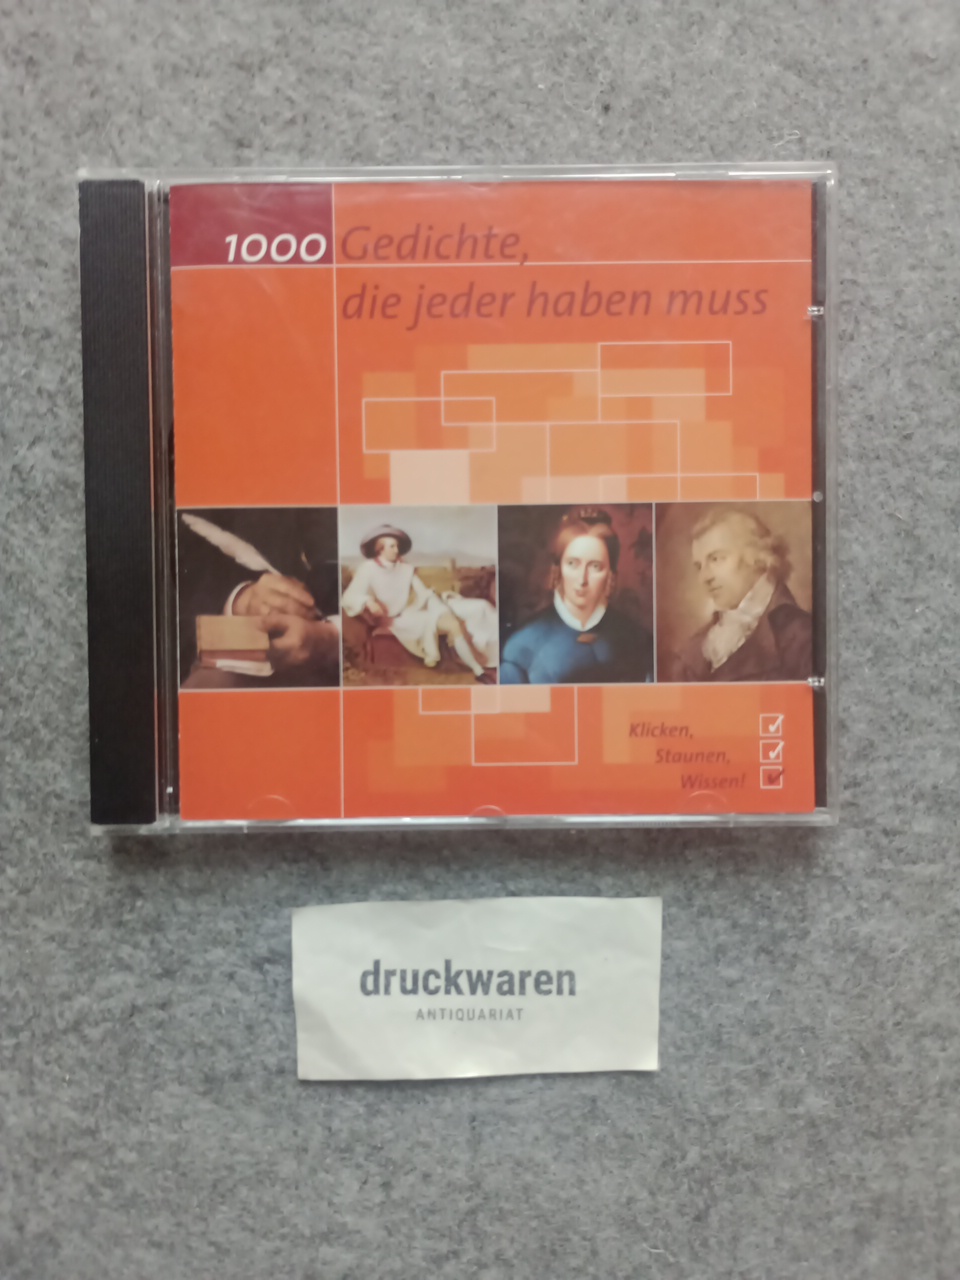 1000 Gedichte, die jeder haben muss [CD-ROM]. - Schiller, Friedrich, Christian Morgenstern Annette von Droste-Hülshoff u. a.